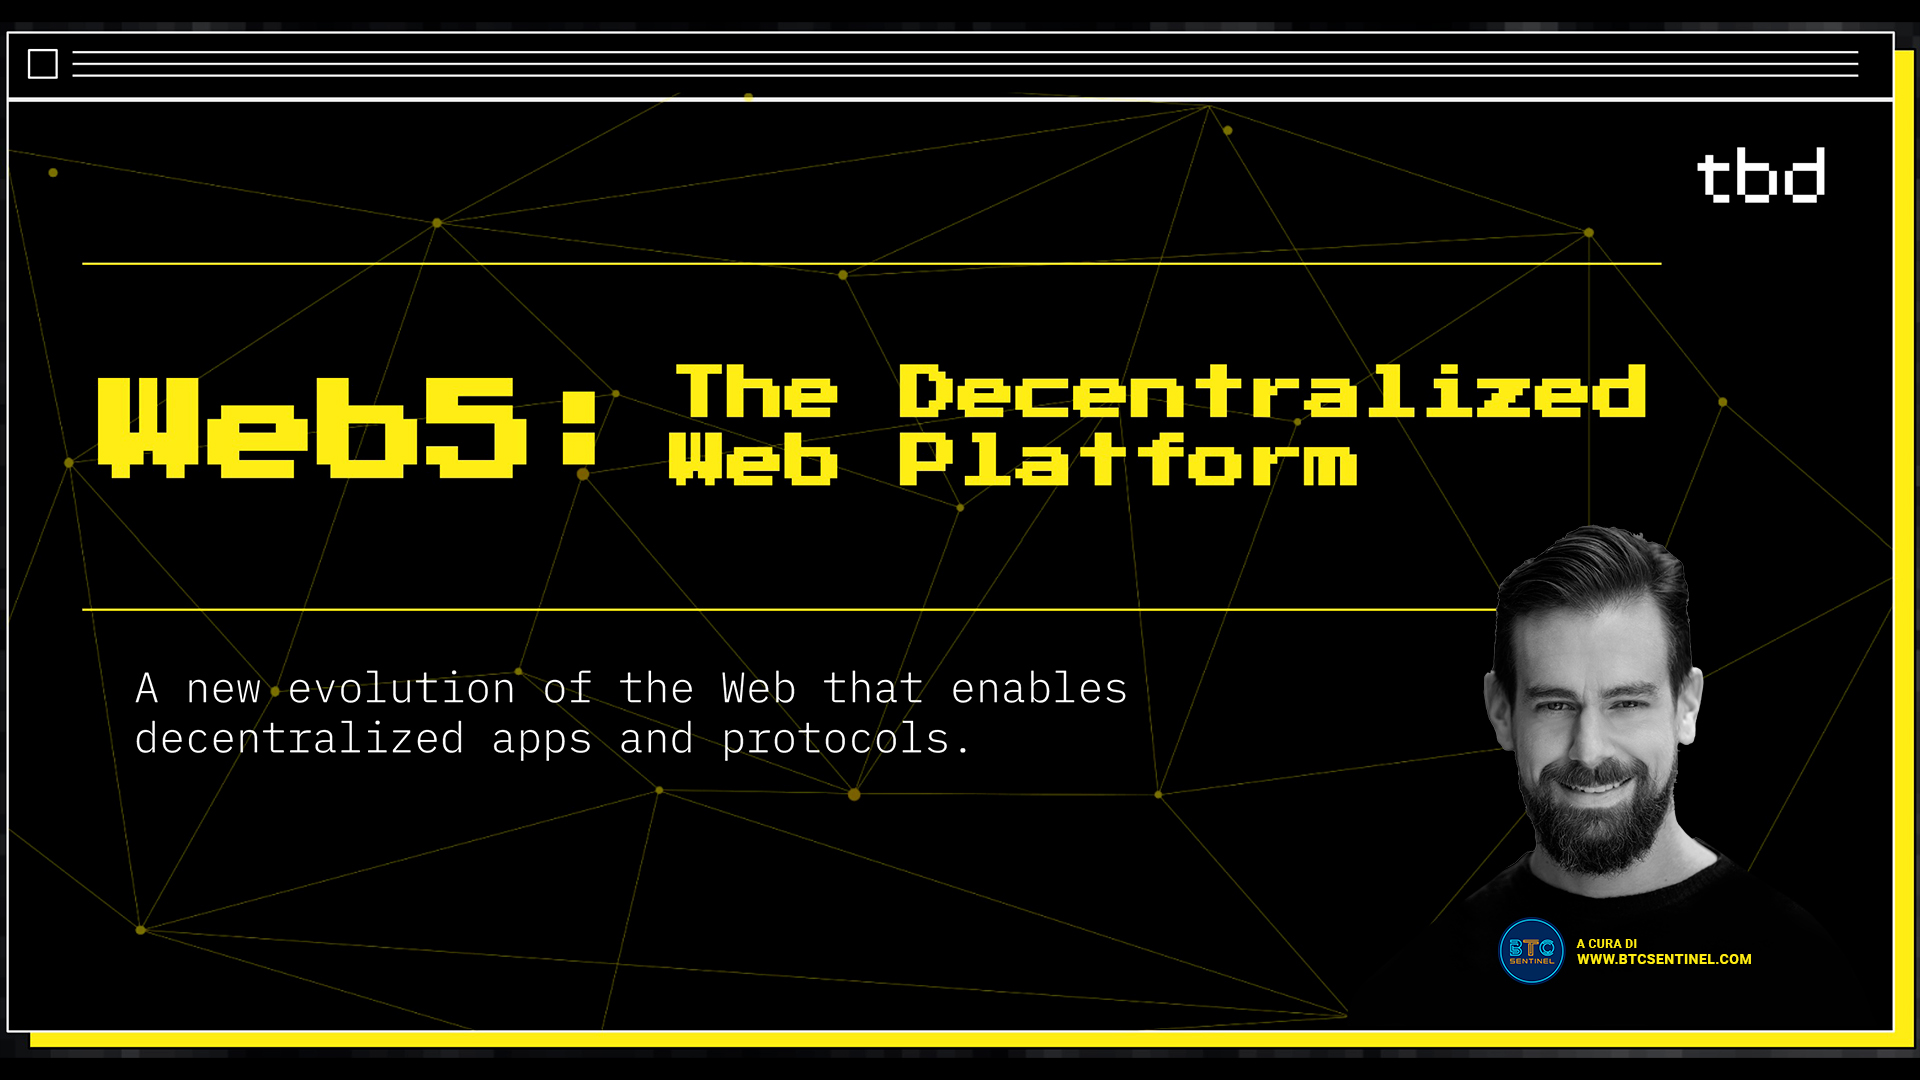 Jack Dorsey presenta il Web5: Web decentralizzato basato su Bitcoin